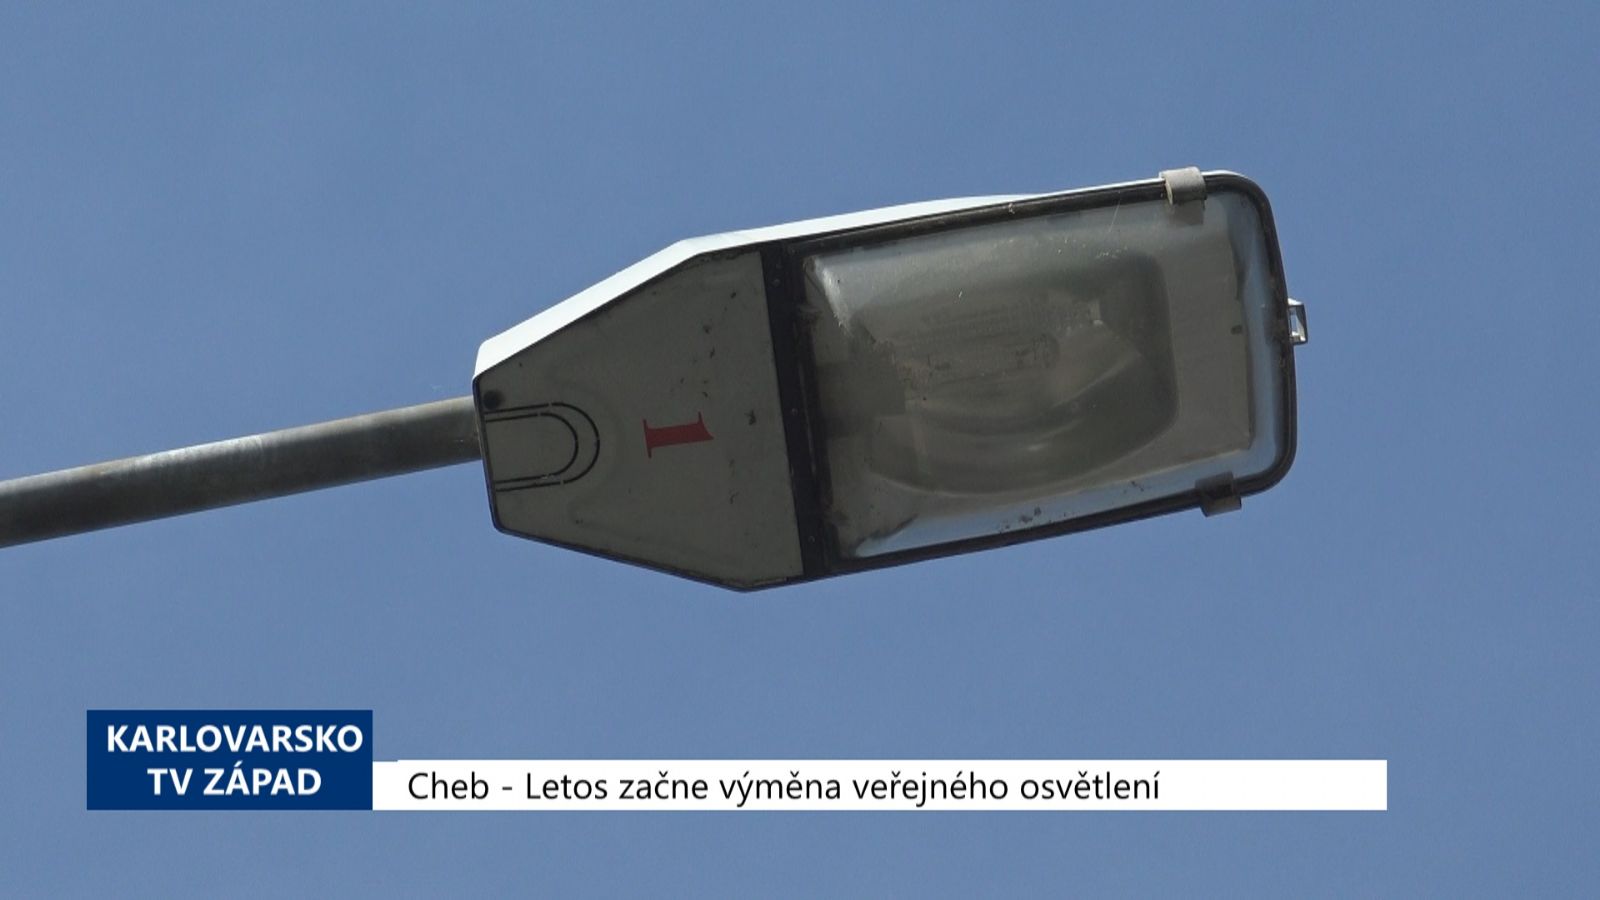 Cheb: Letos začne výměna veřejného osvětlení (TV Západ)